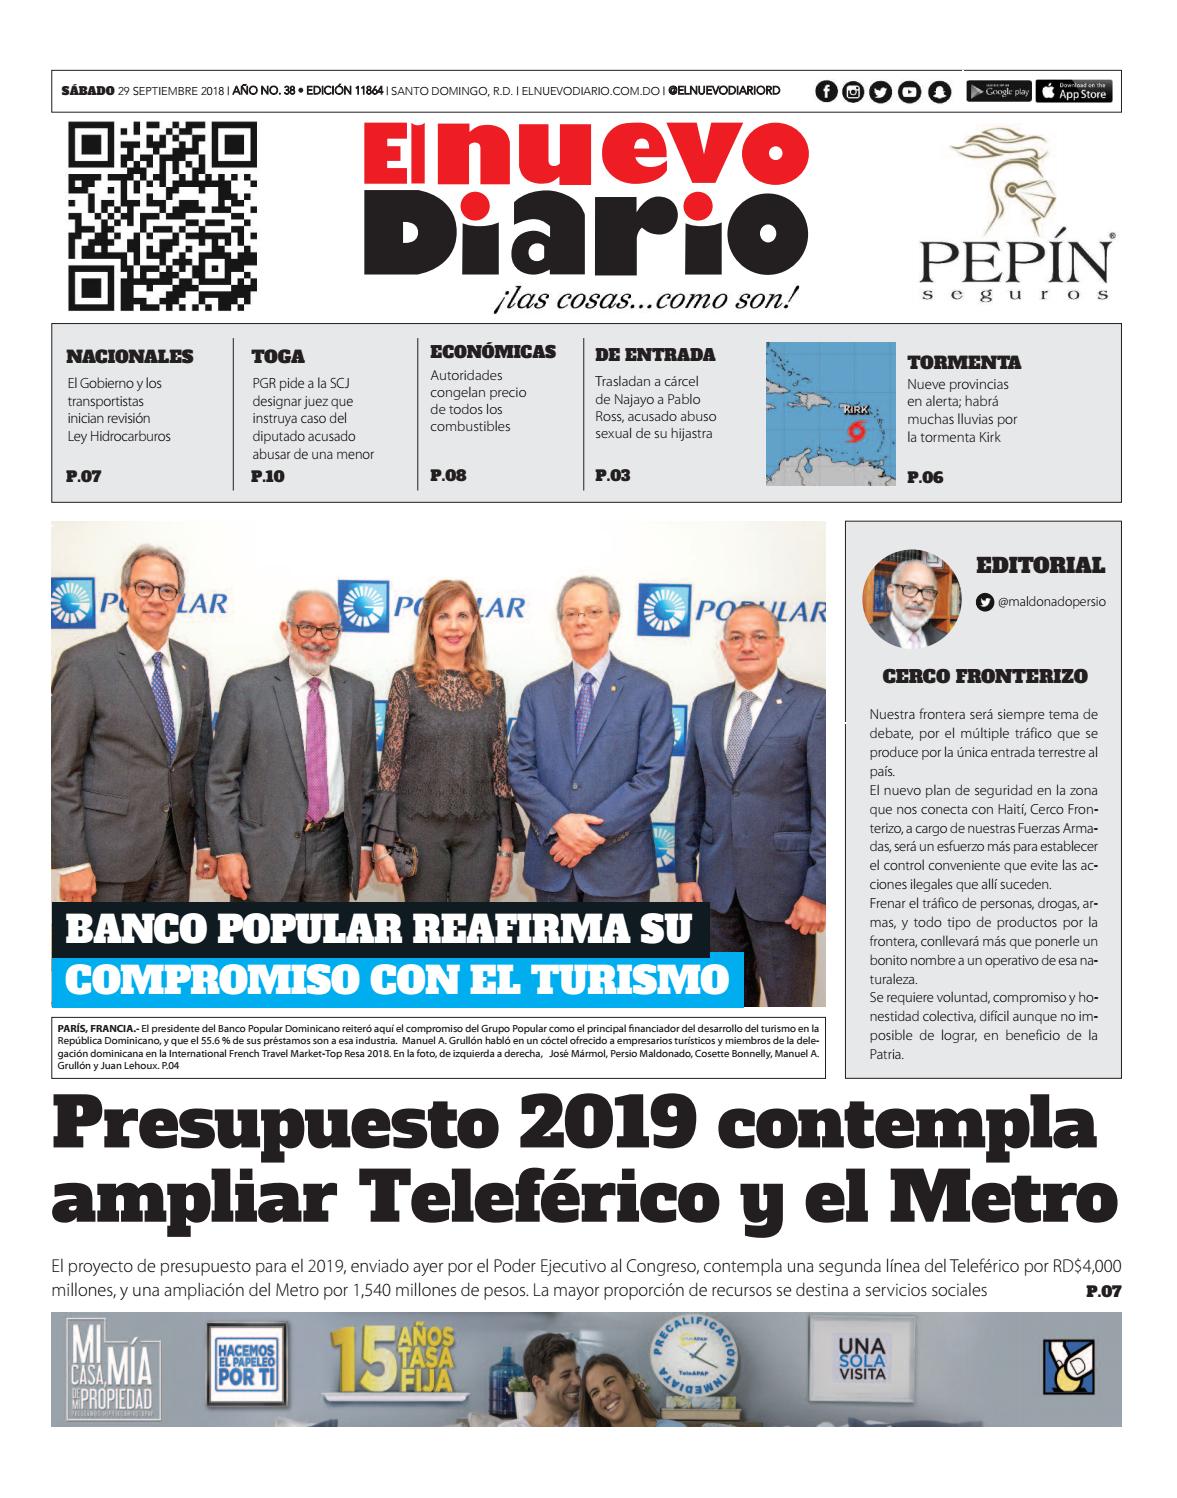 Portada Periódico El Nuevo Diario, Sábado 29 de Septiembre 2018